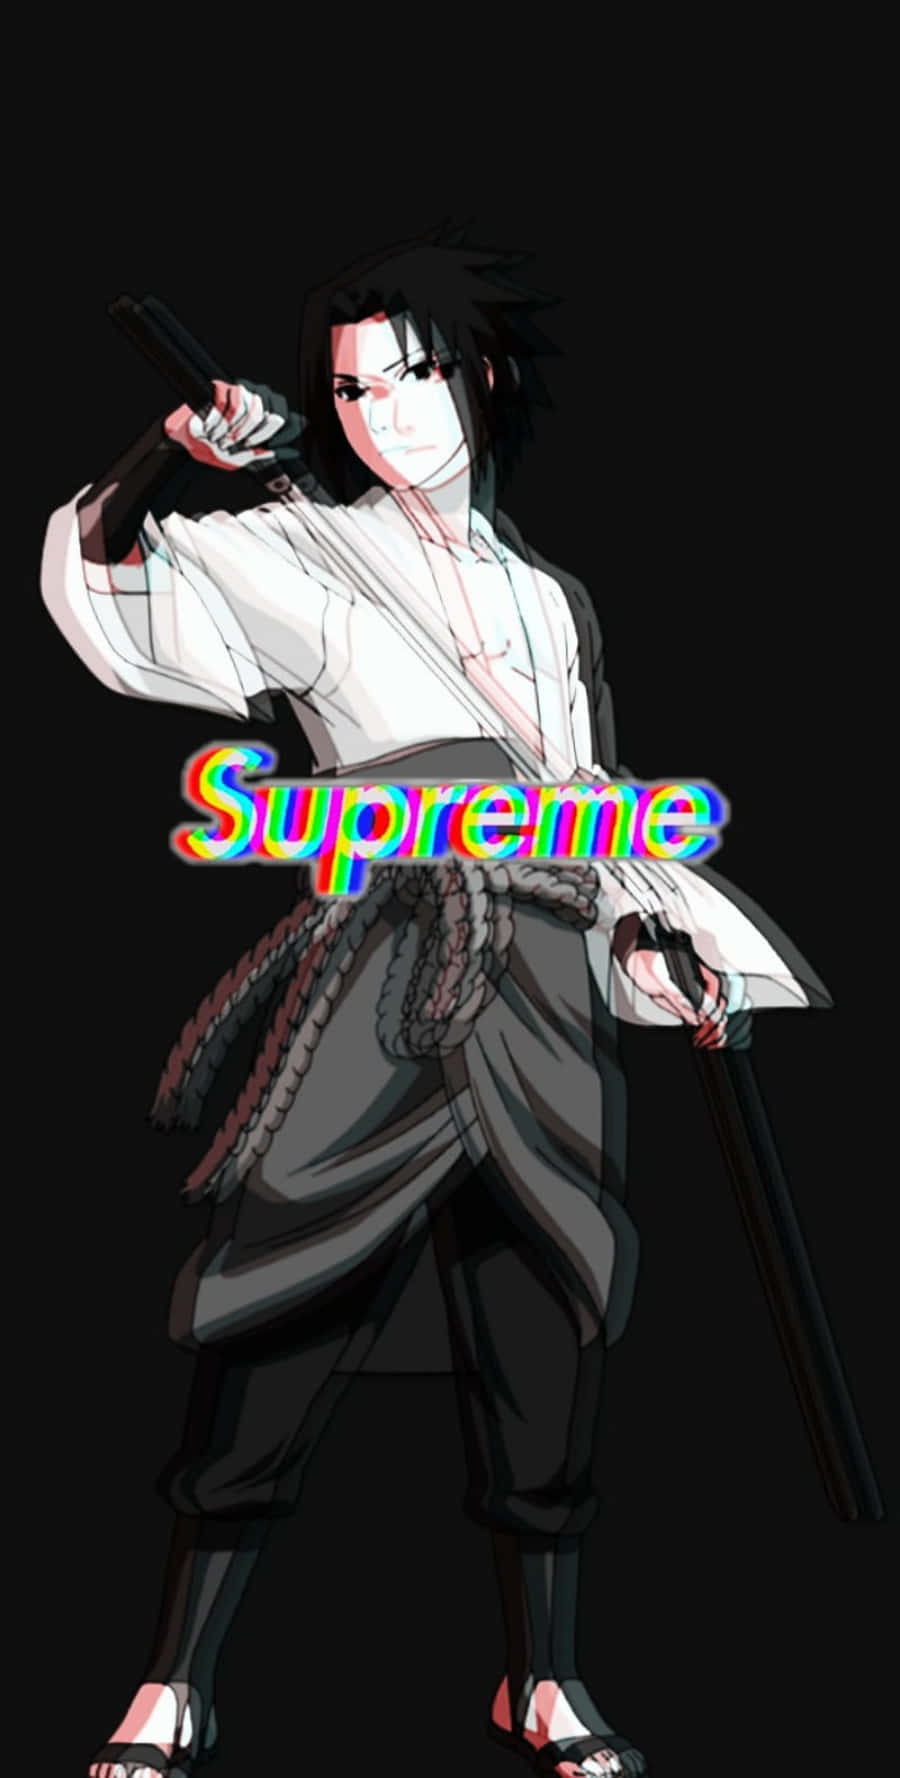 Sasuke Supreme Naruto Glitch Digital Art Wallpaper